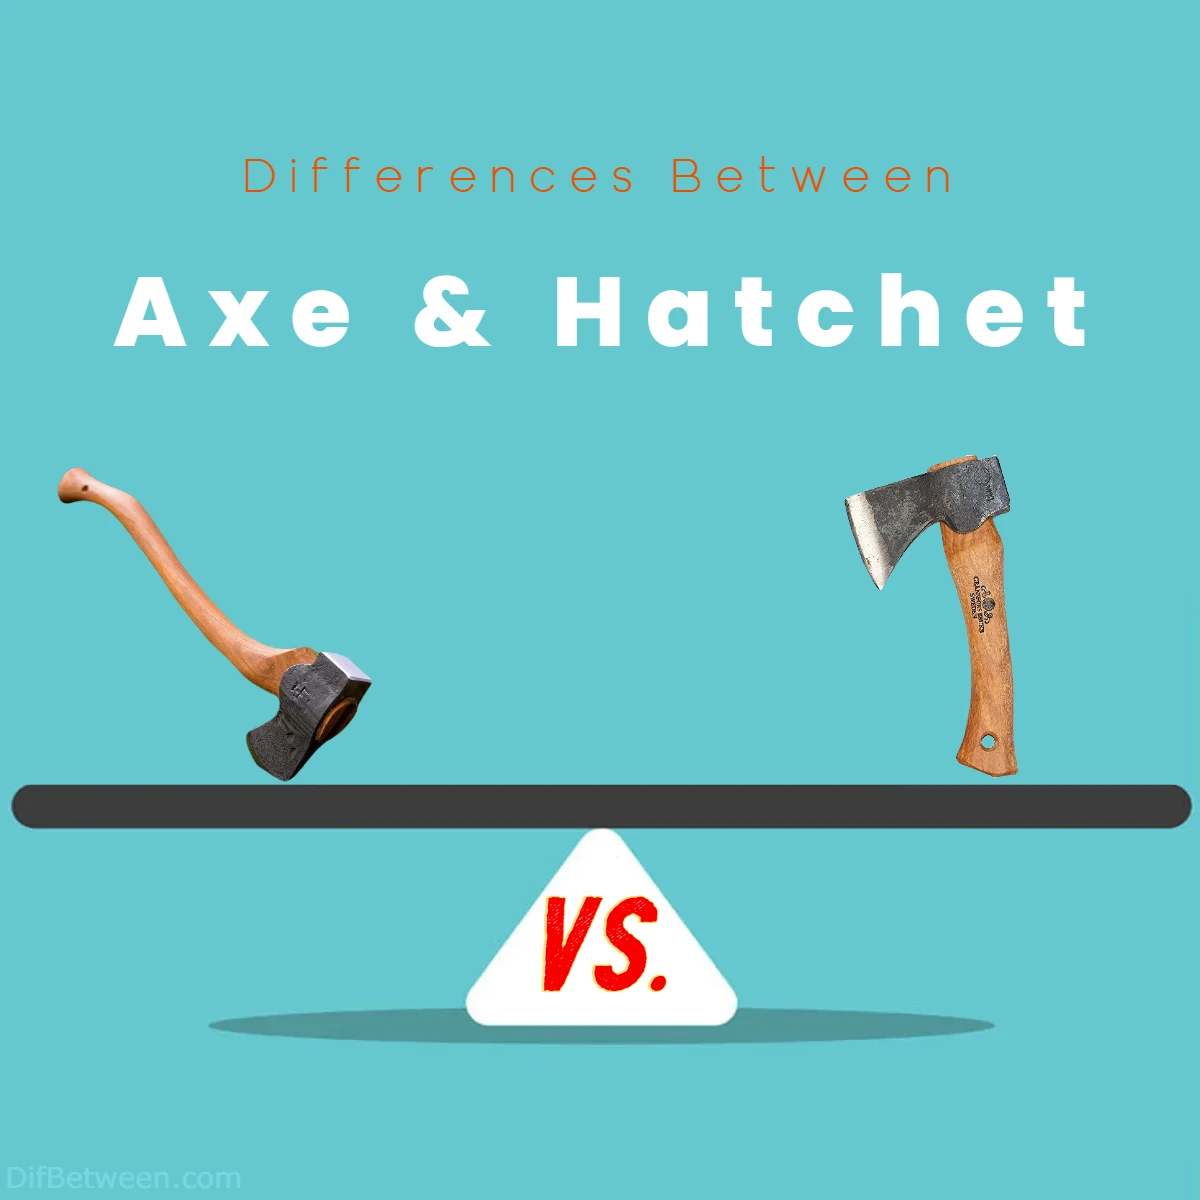 Differences Between Axe vs Hatchet